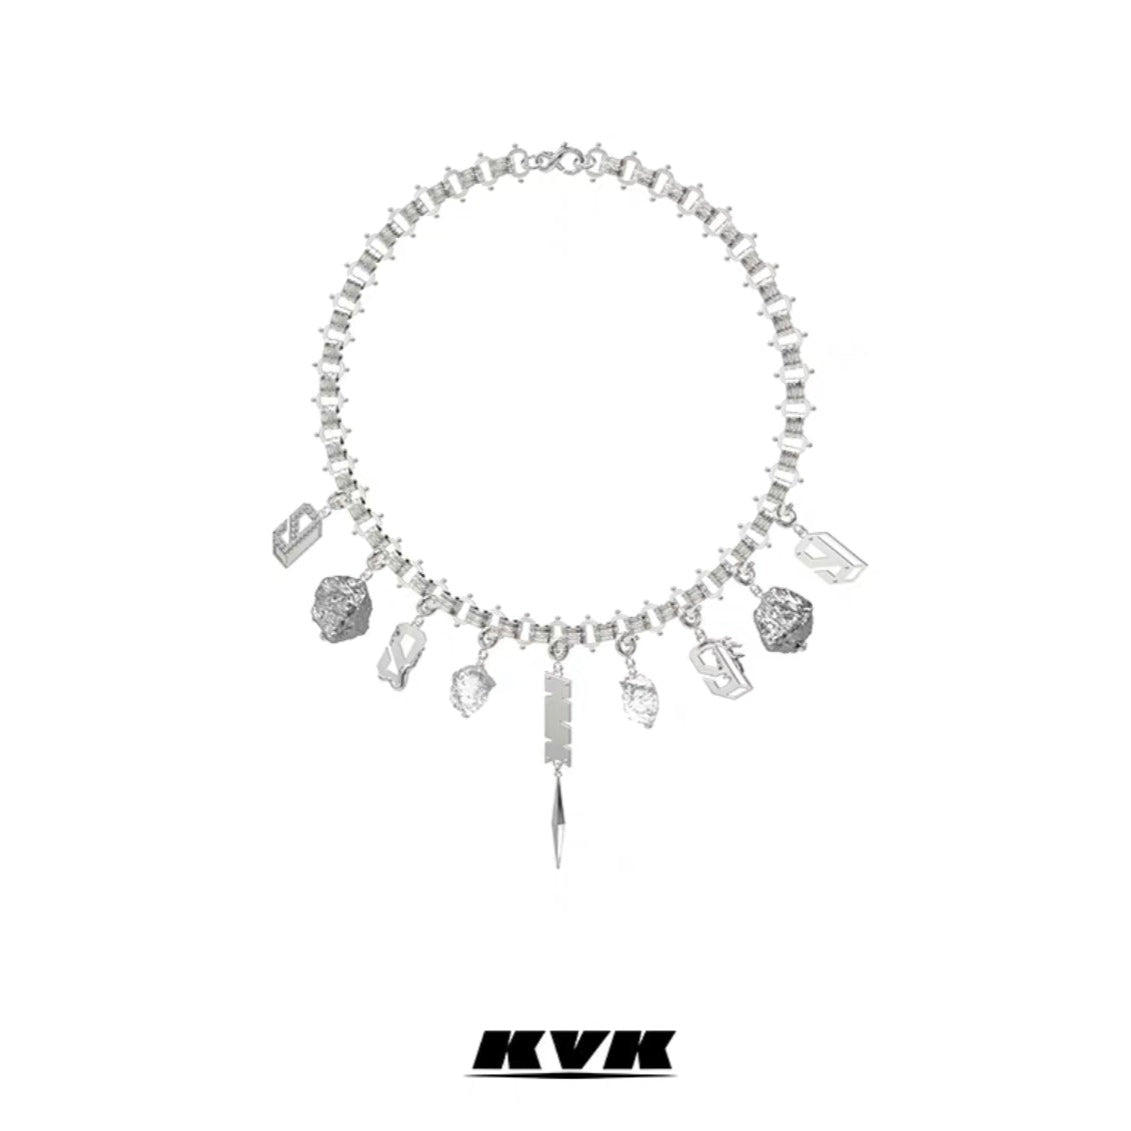 KVK Potential Collection Multi-Element Necklace - Fixxshop